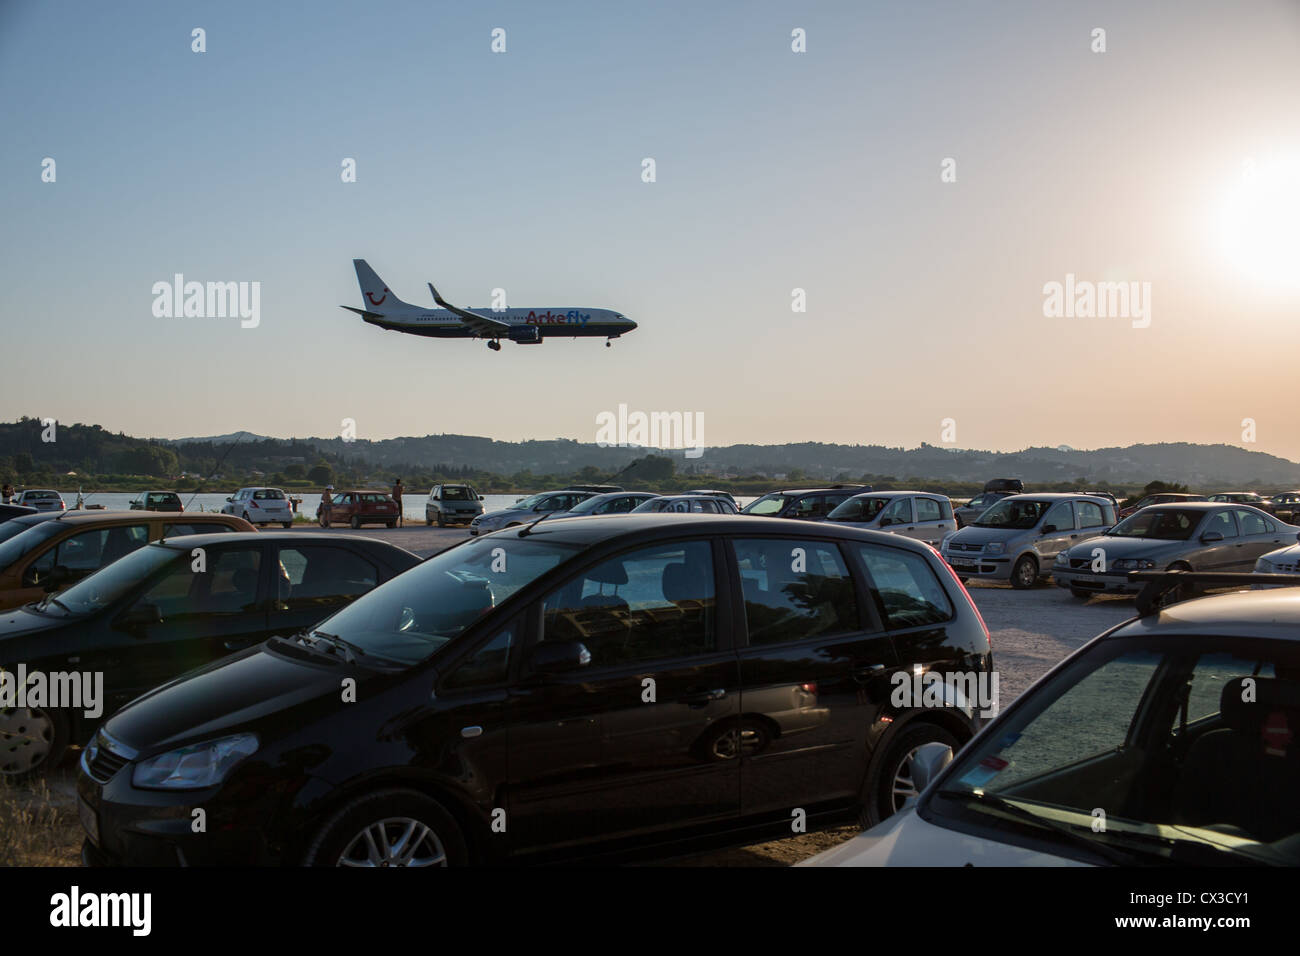 ArkeFly passeggero aereo atterra all'Kapodistrias l'Aeroporto Internazionale di Corfu (città di Corfù), Corfu, Isole Ionie, Grecia. Foto Stock